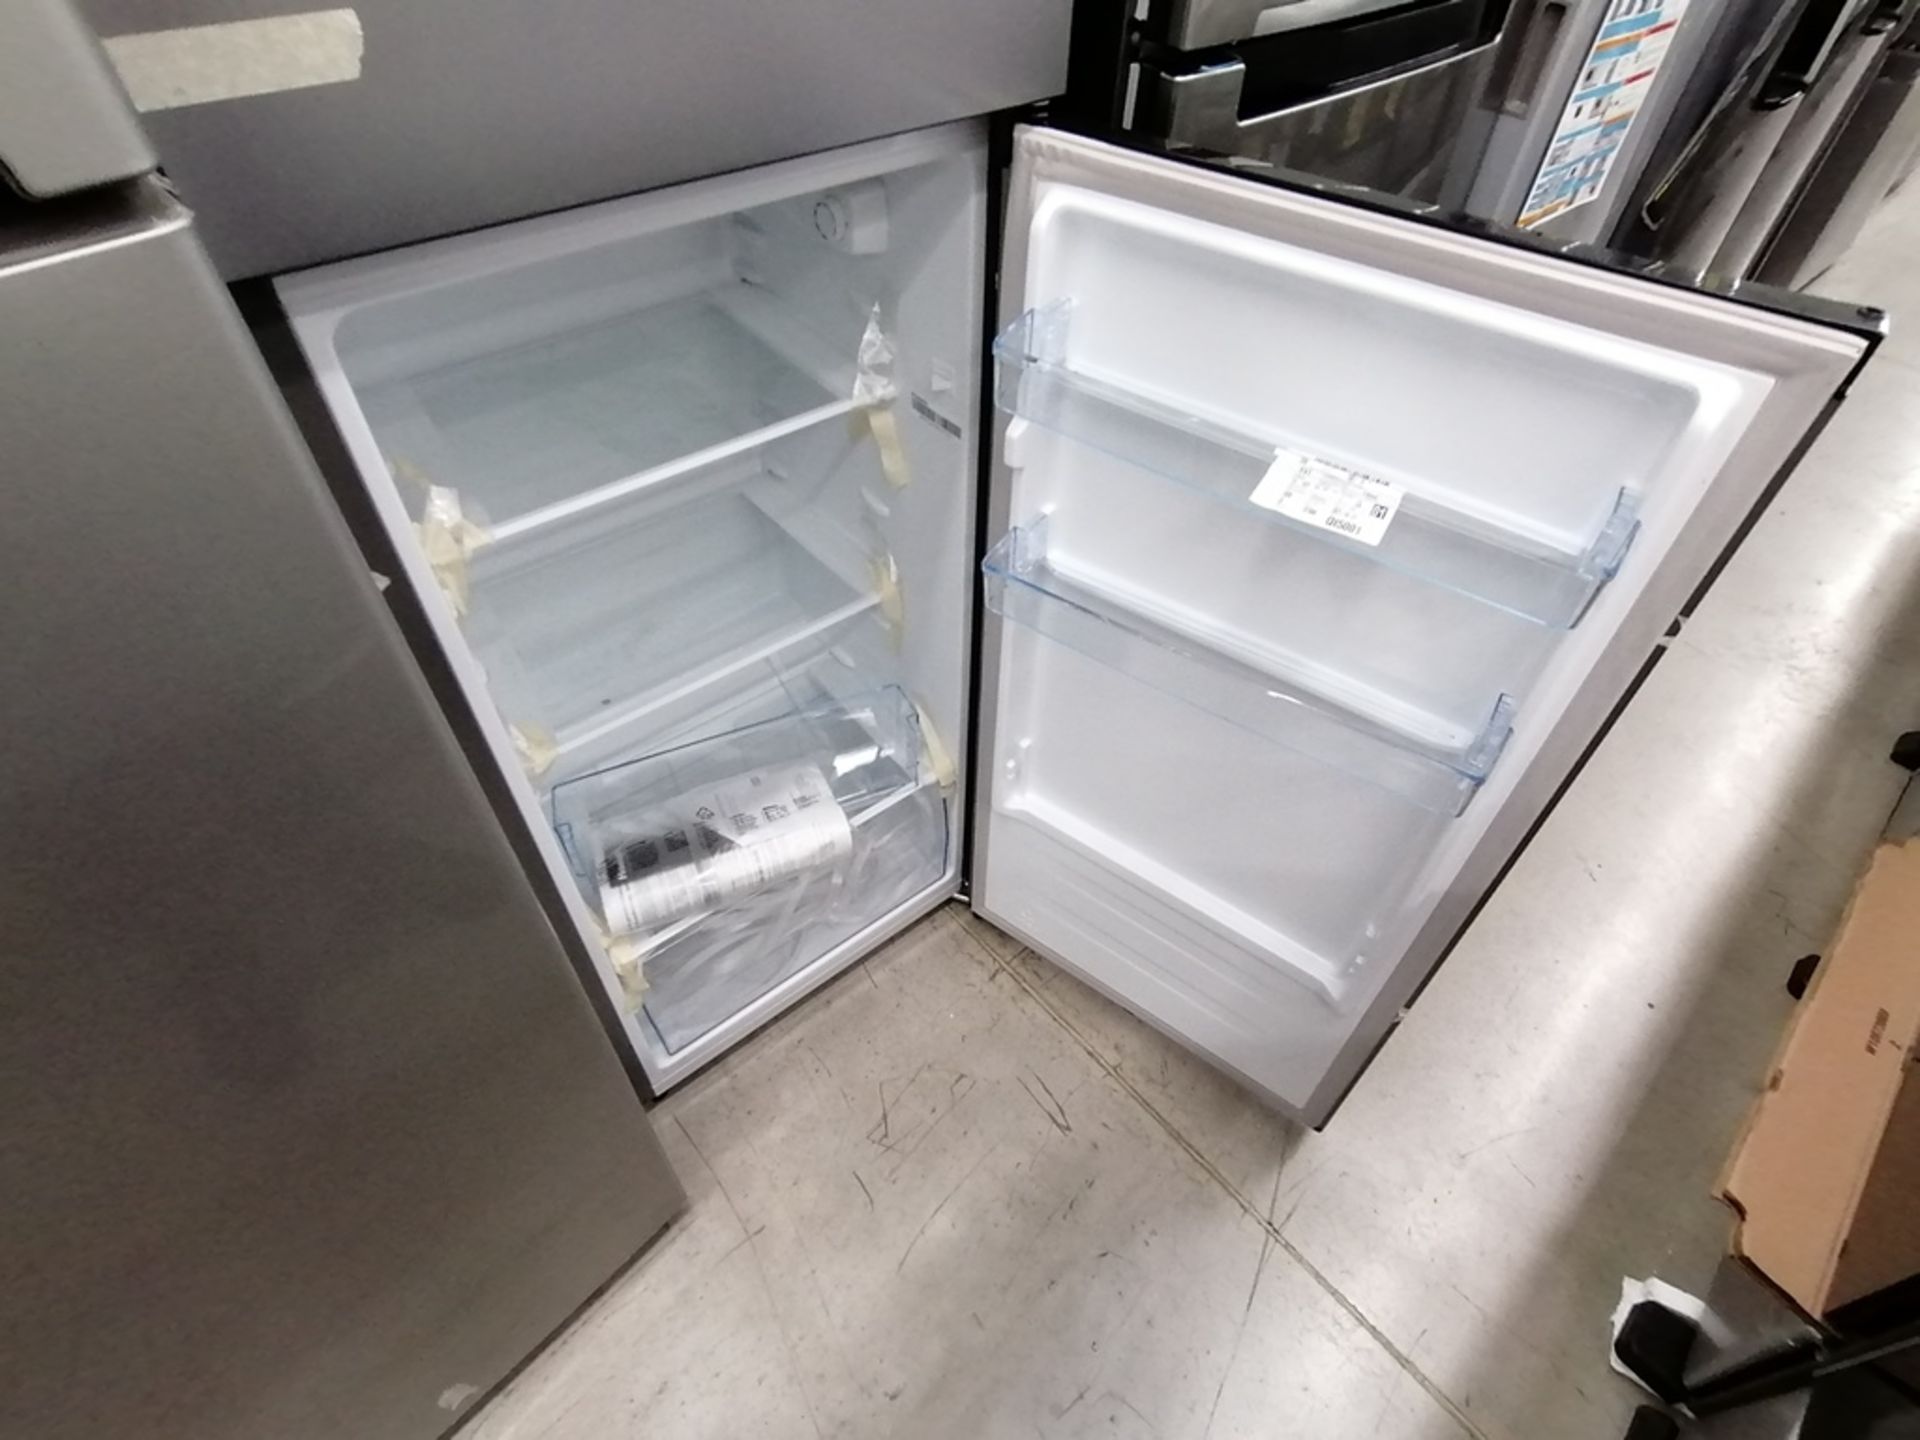 Lote de 2 refrigeradores incluye: 1 Refrigerador, Marca Winia, Modelo DFR25210GN, Serie MR21ZN08401 - Image 7 of 15